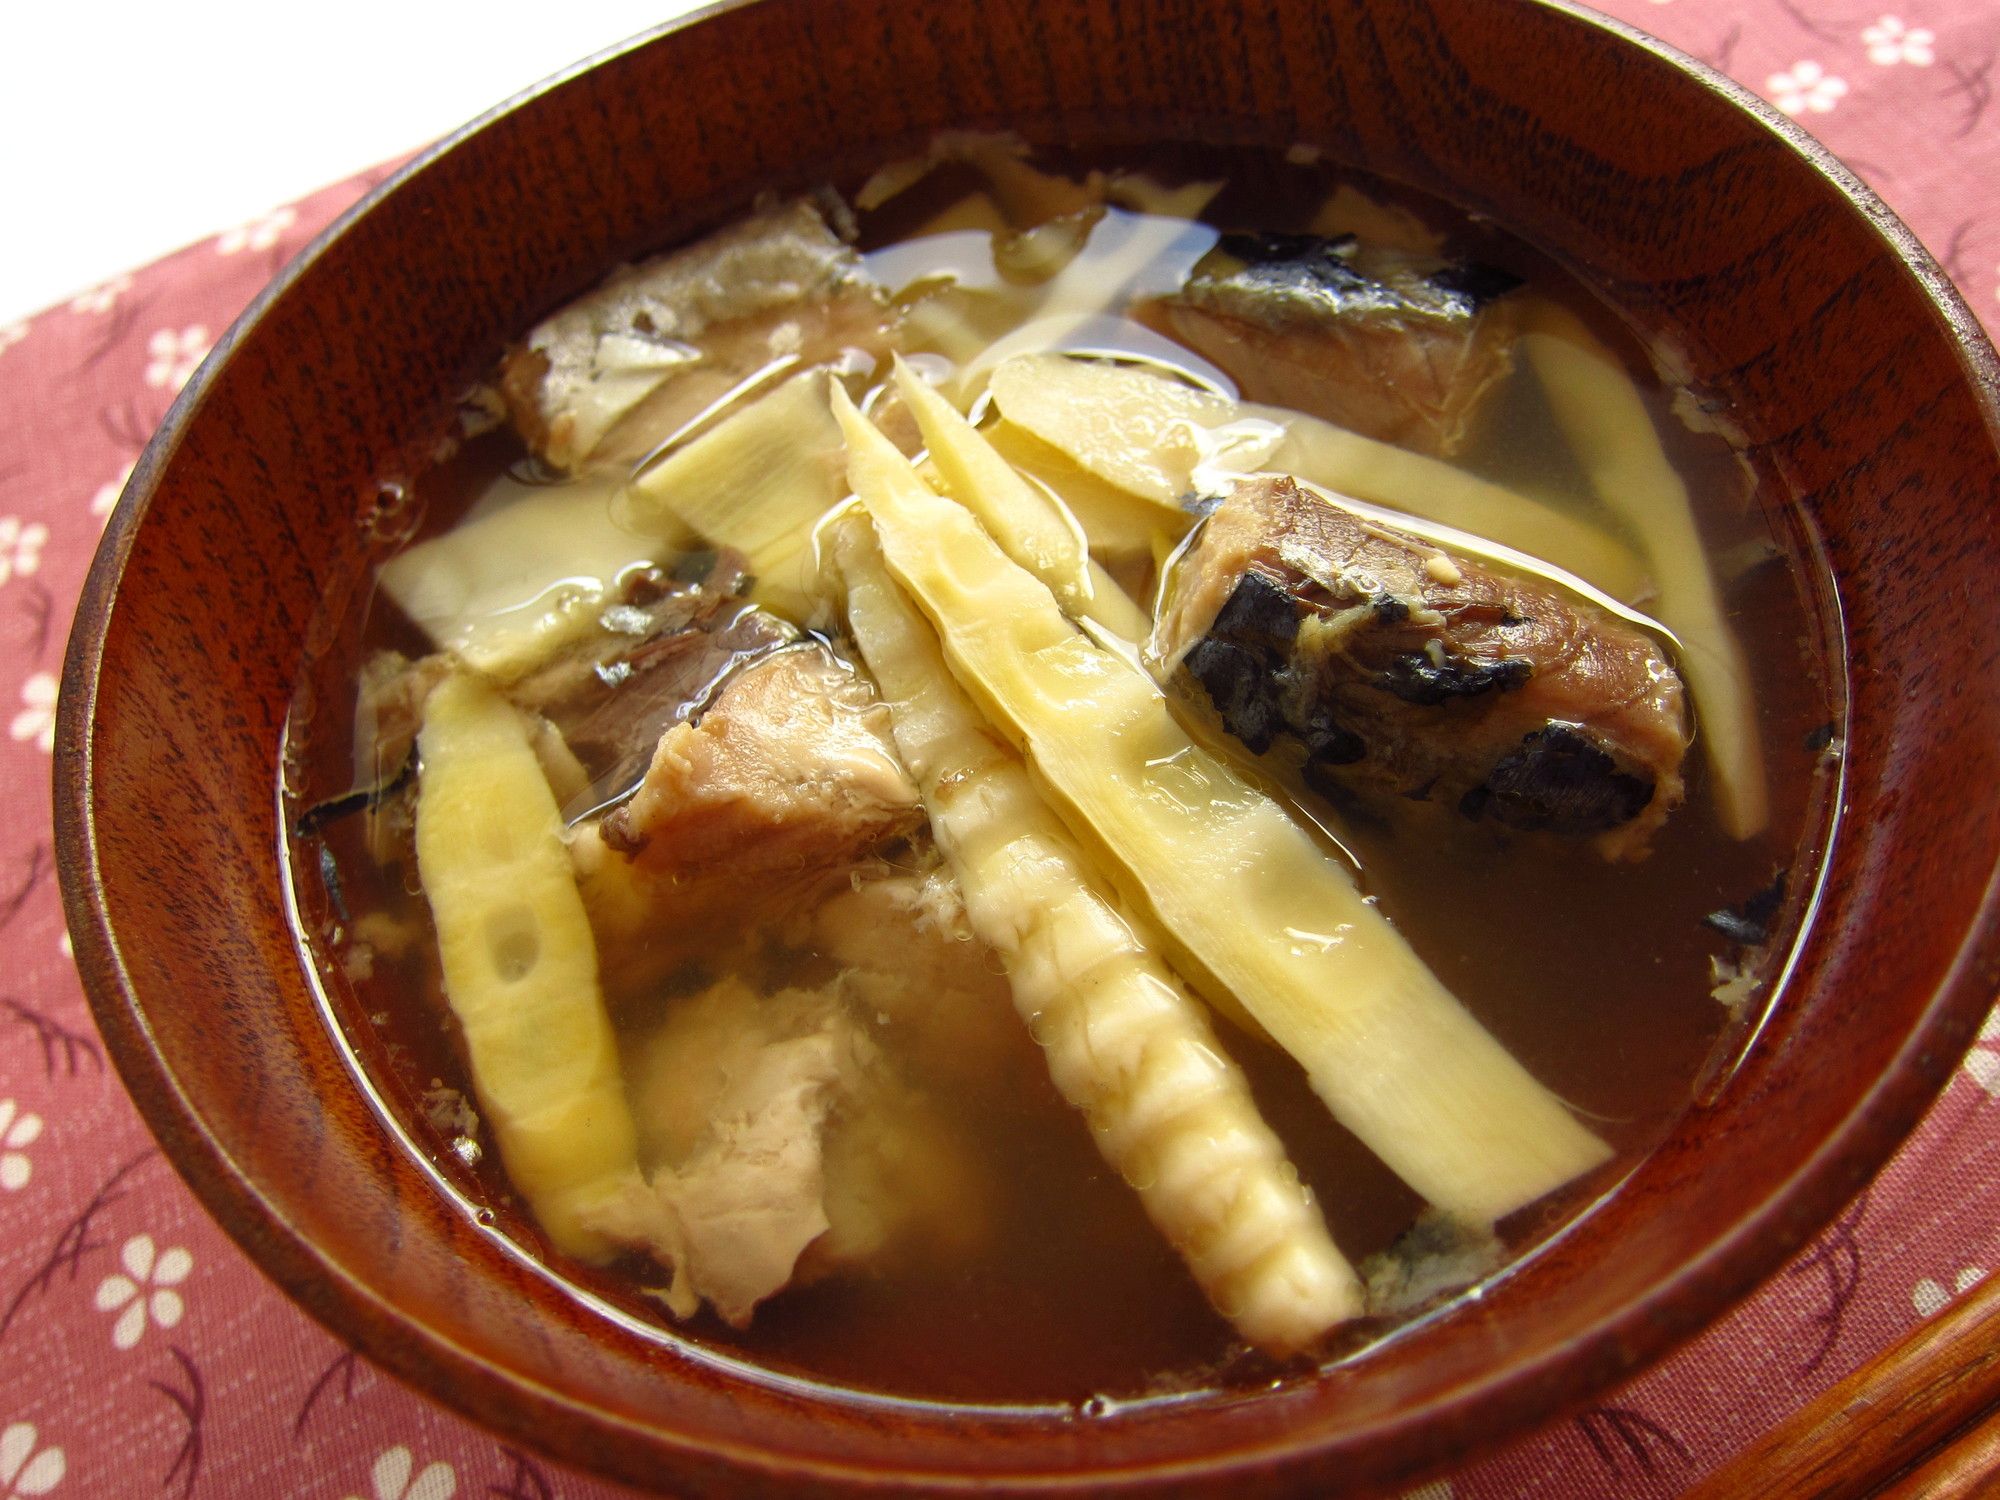 日本人が積極的に｢サバ缶｣を食べだしたワケ みそ汁からパスタ､炊き込みご飯まで | 食品 | 東洋経済オンライン